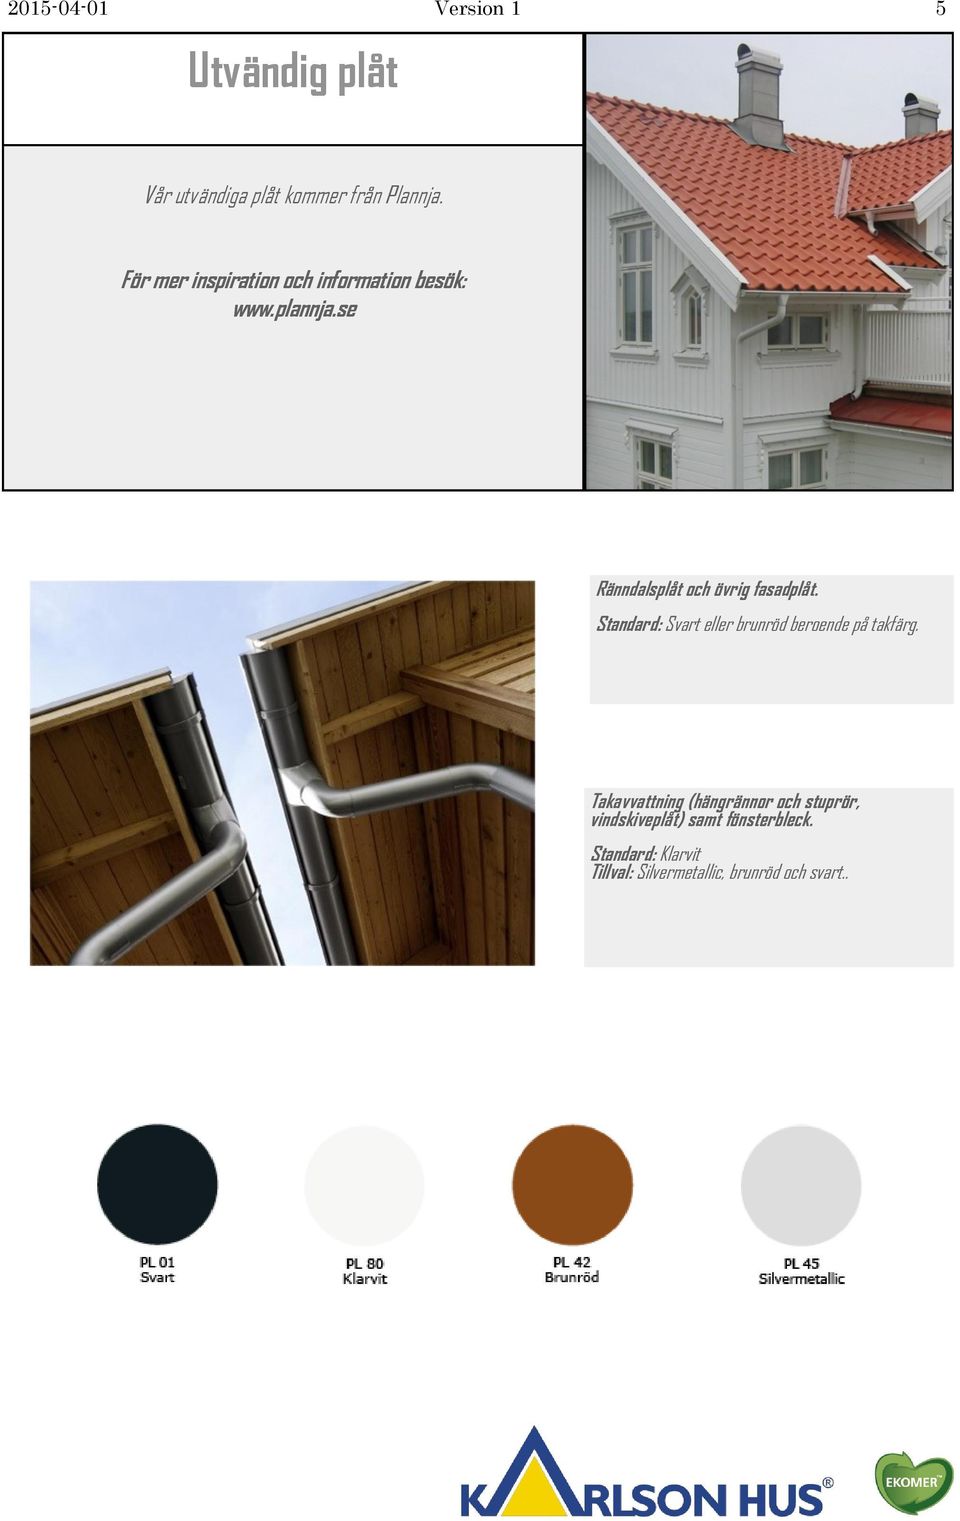 se Ränndalsplåt och övrig fasadplåt. Standard: Svart eller brunröd beroende på takfärg.